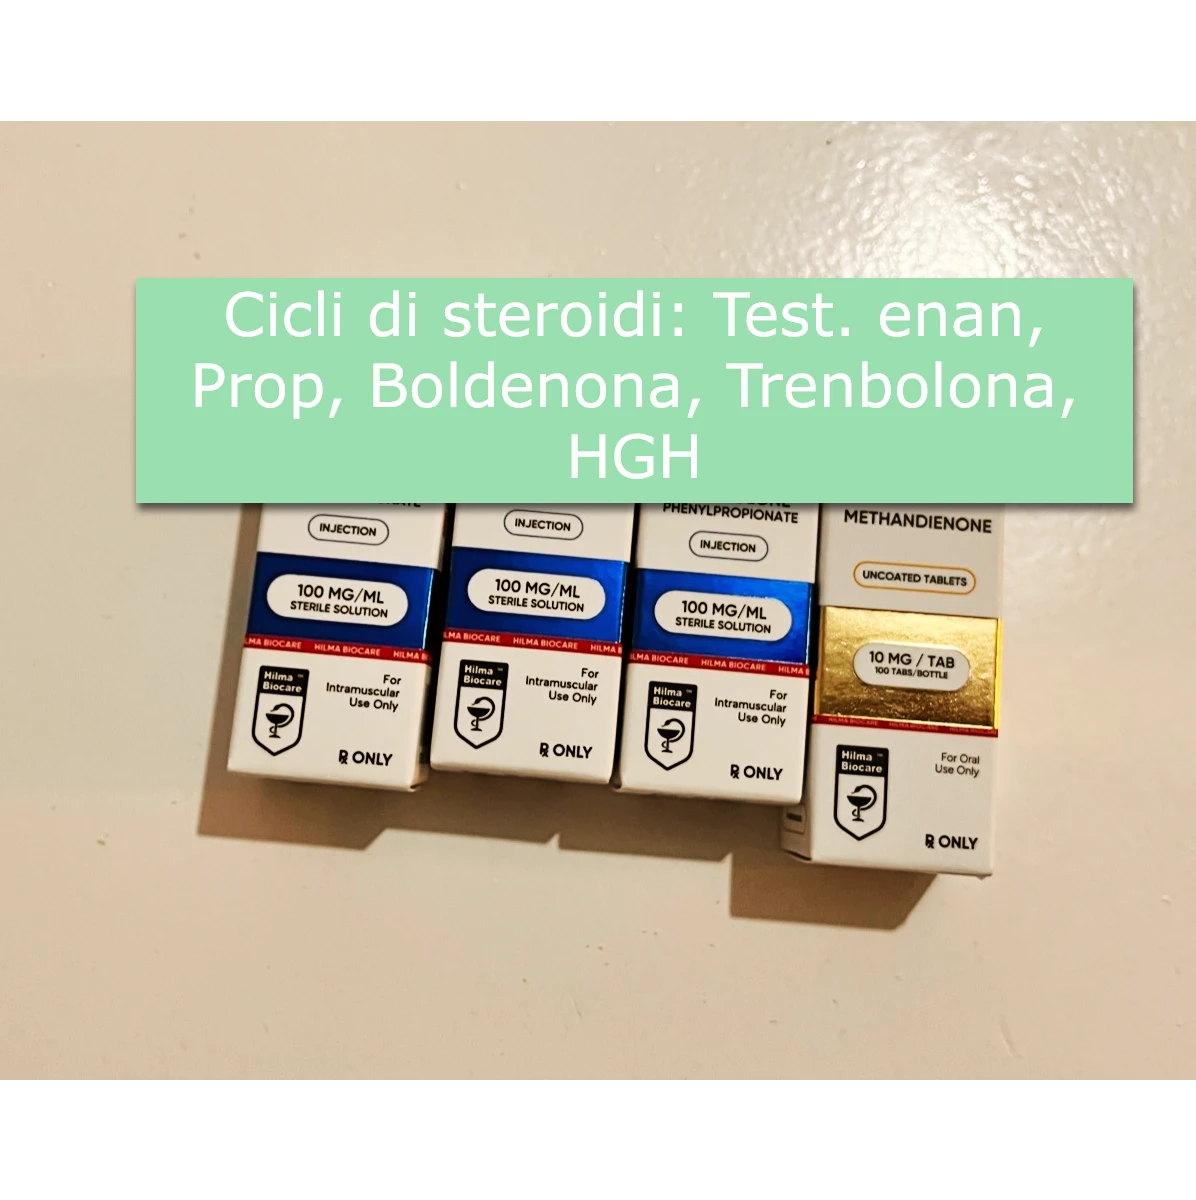 Cicli di steroidi: Test. enan, Prop, Boldenona, Trenbolona